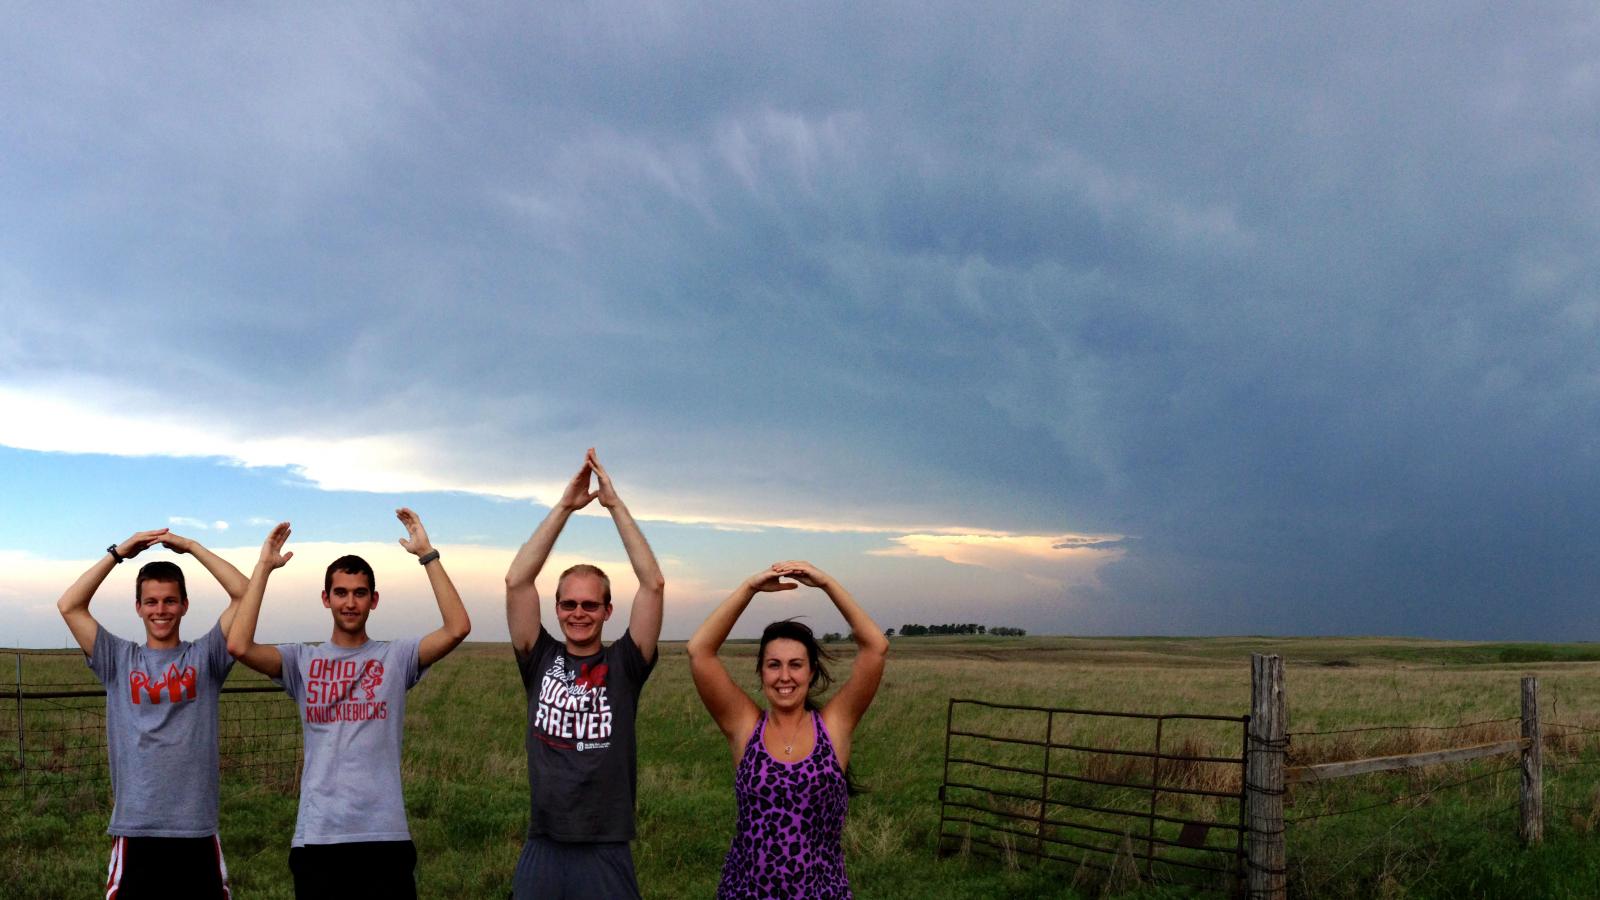 Met Club storm spotting in Kansas